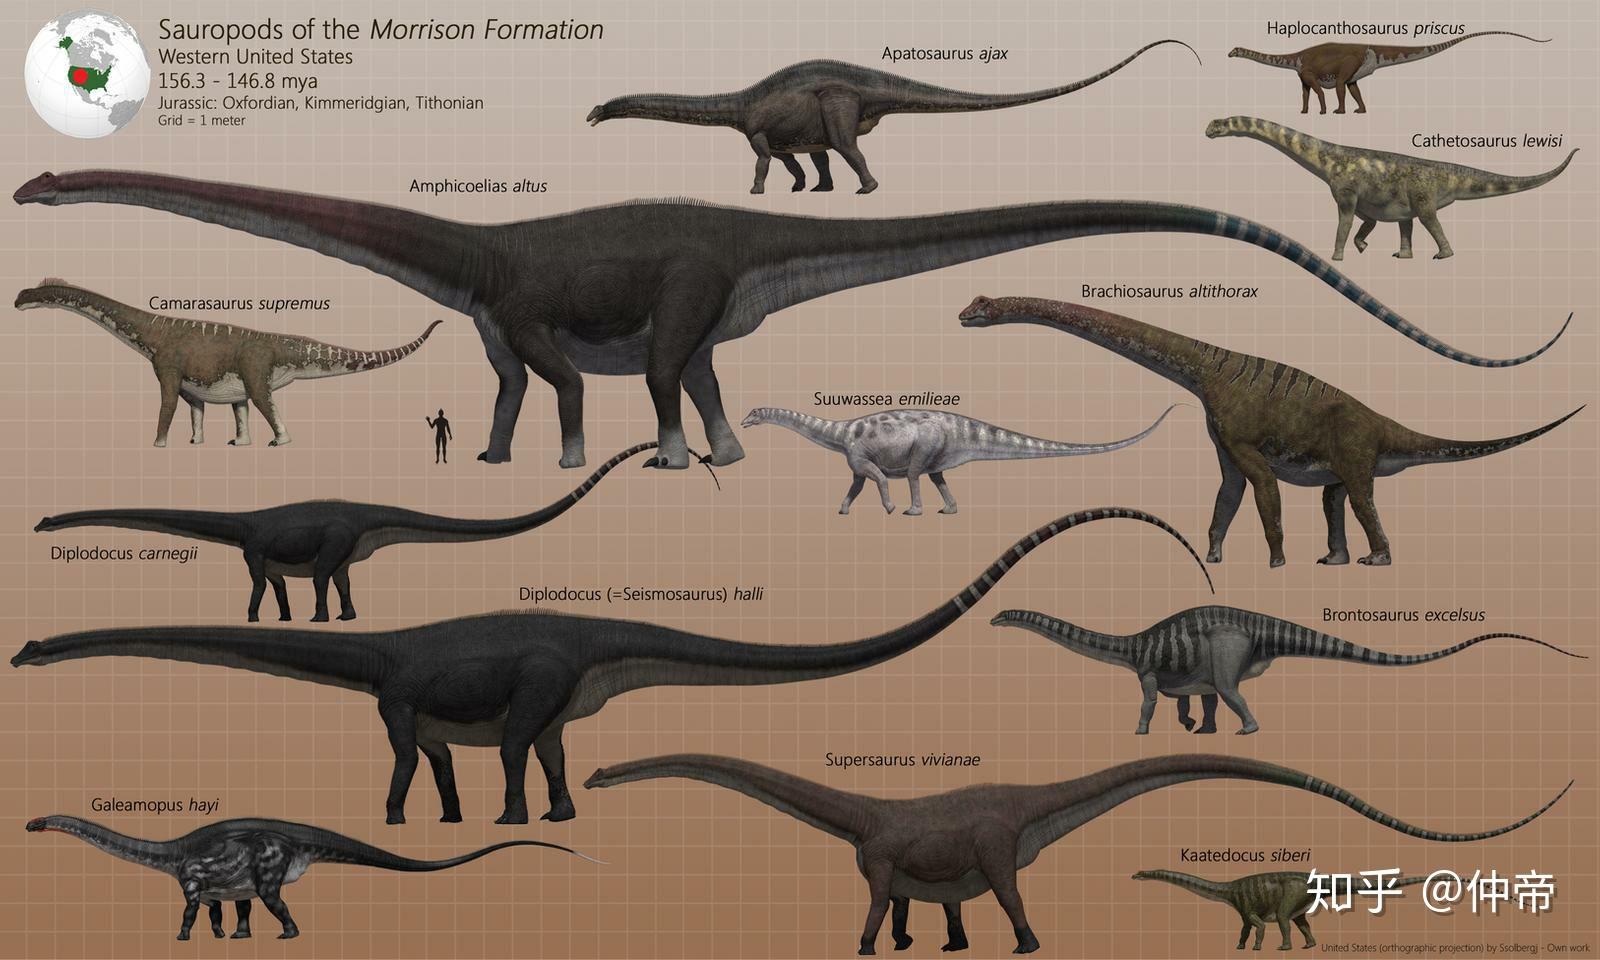 求恐龙大小比例图